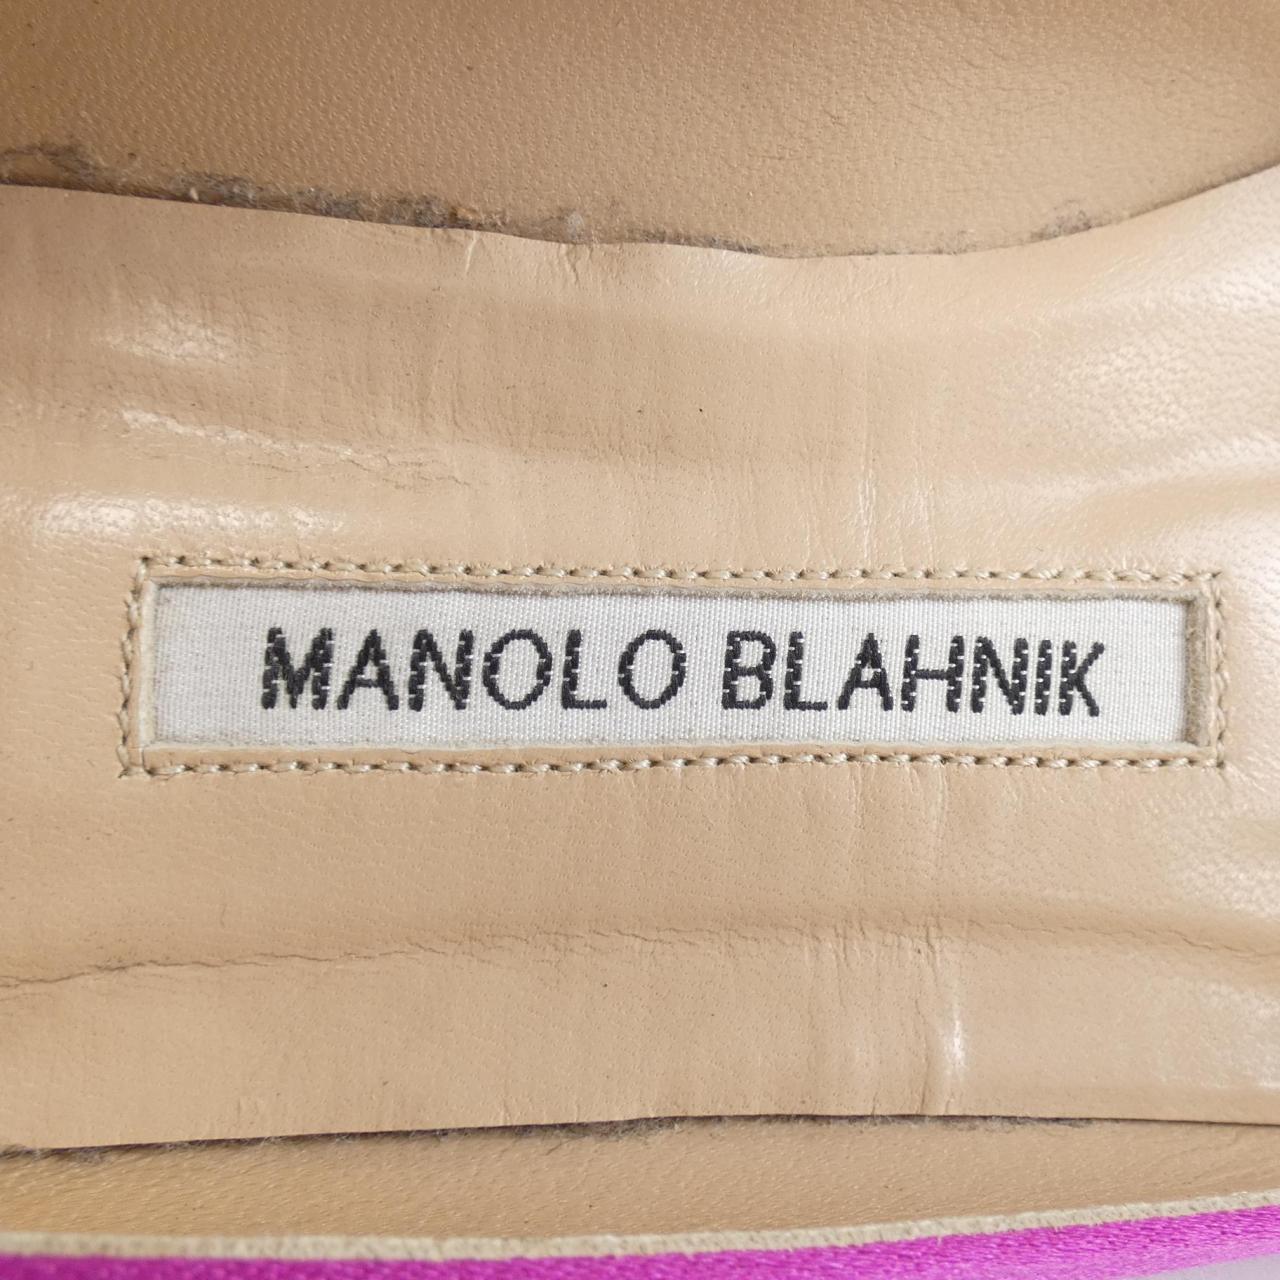 U MANOLO BLAHNIK MANOLO BLAHNIK SHOES